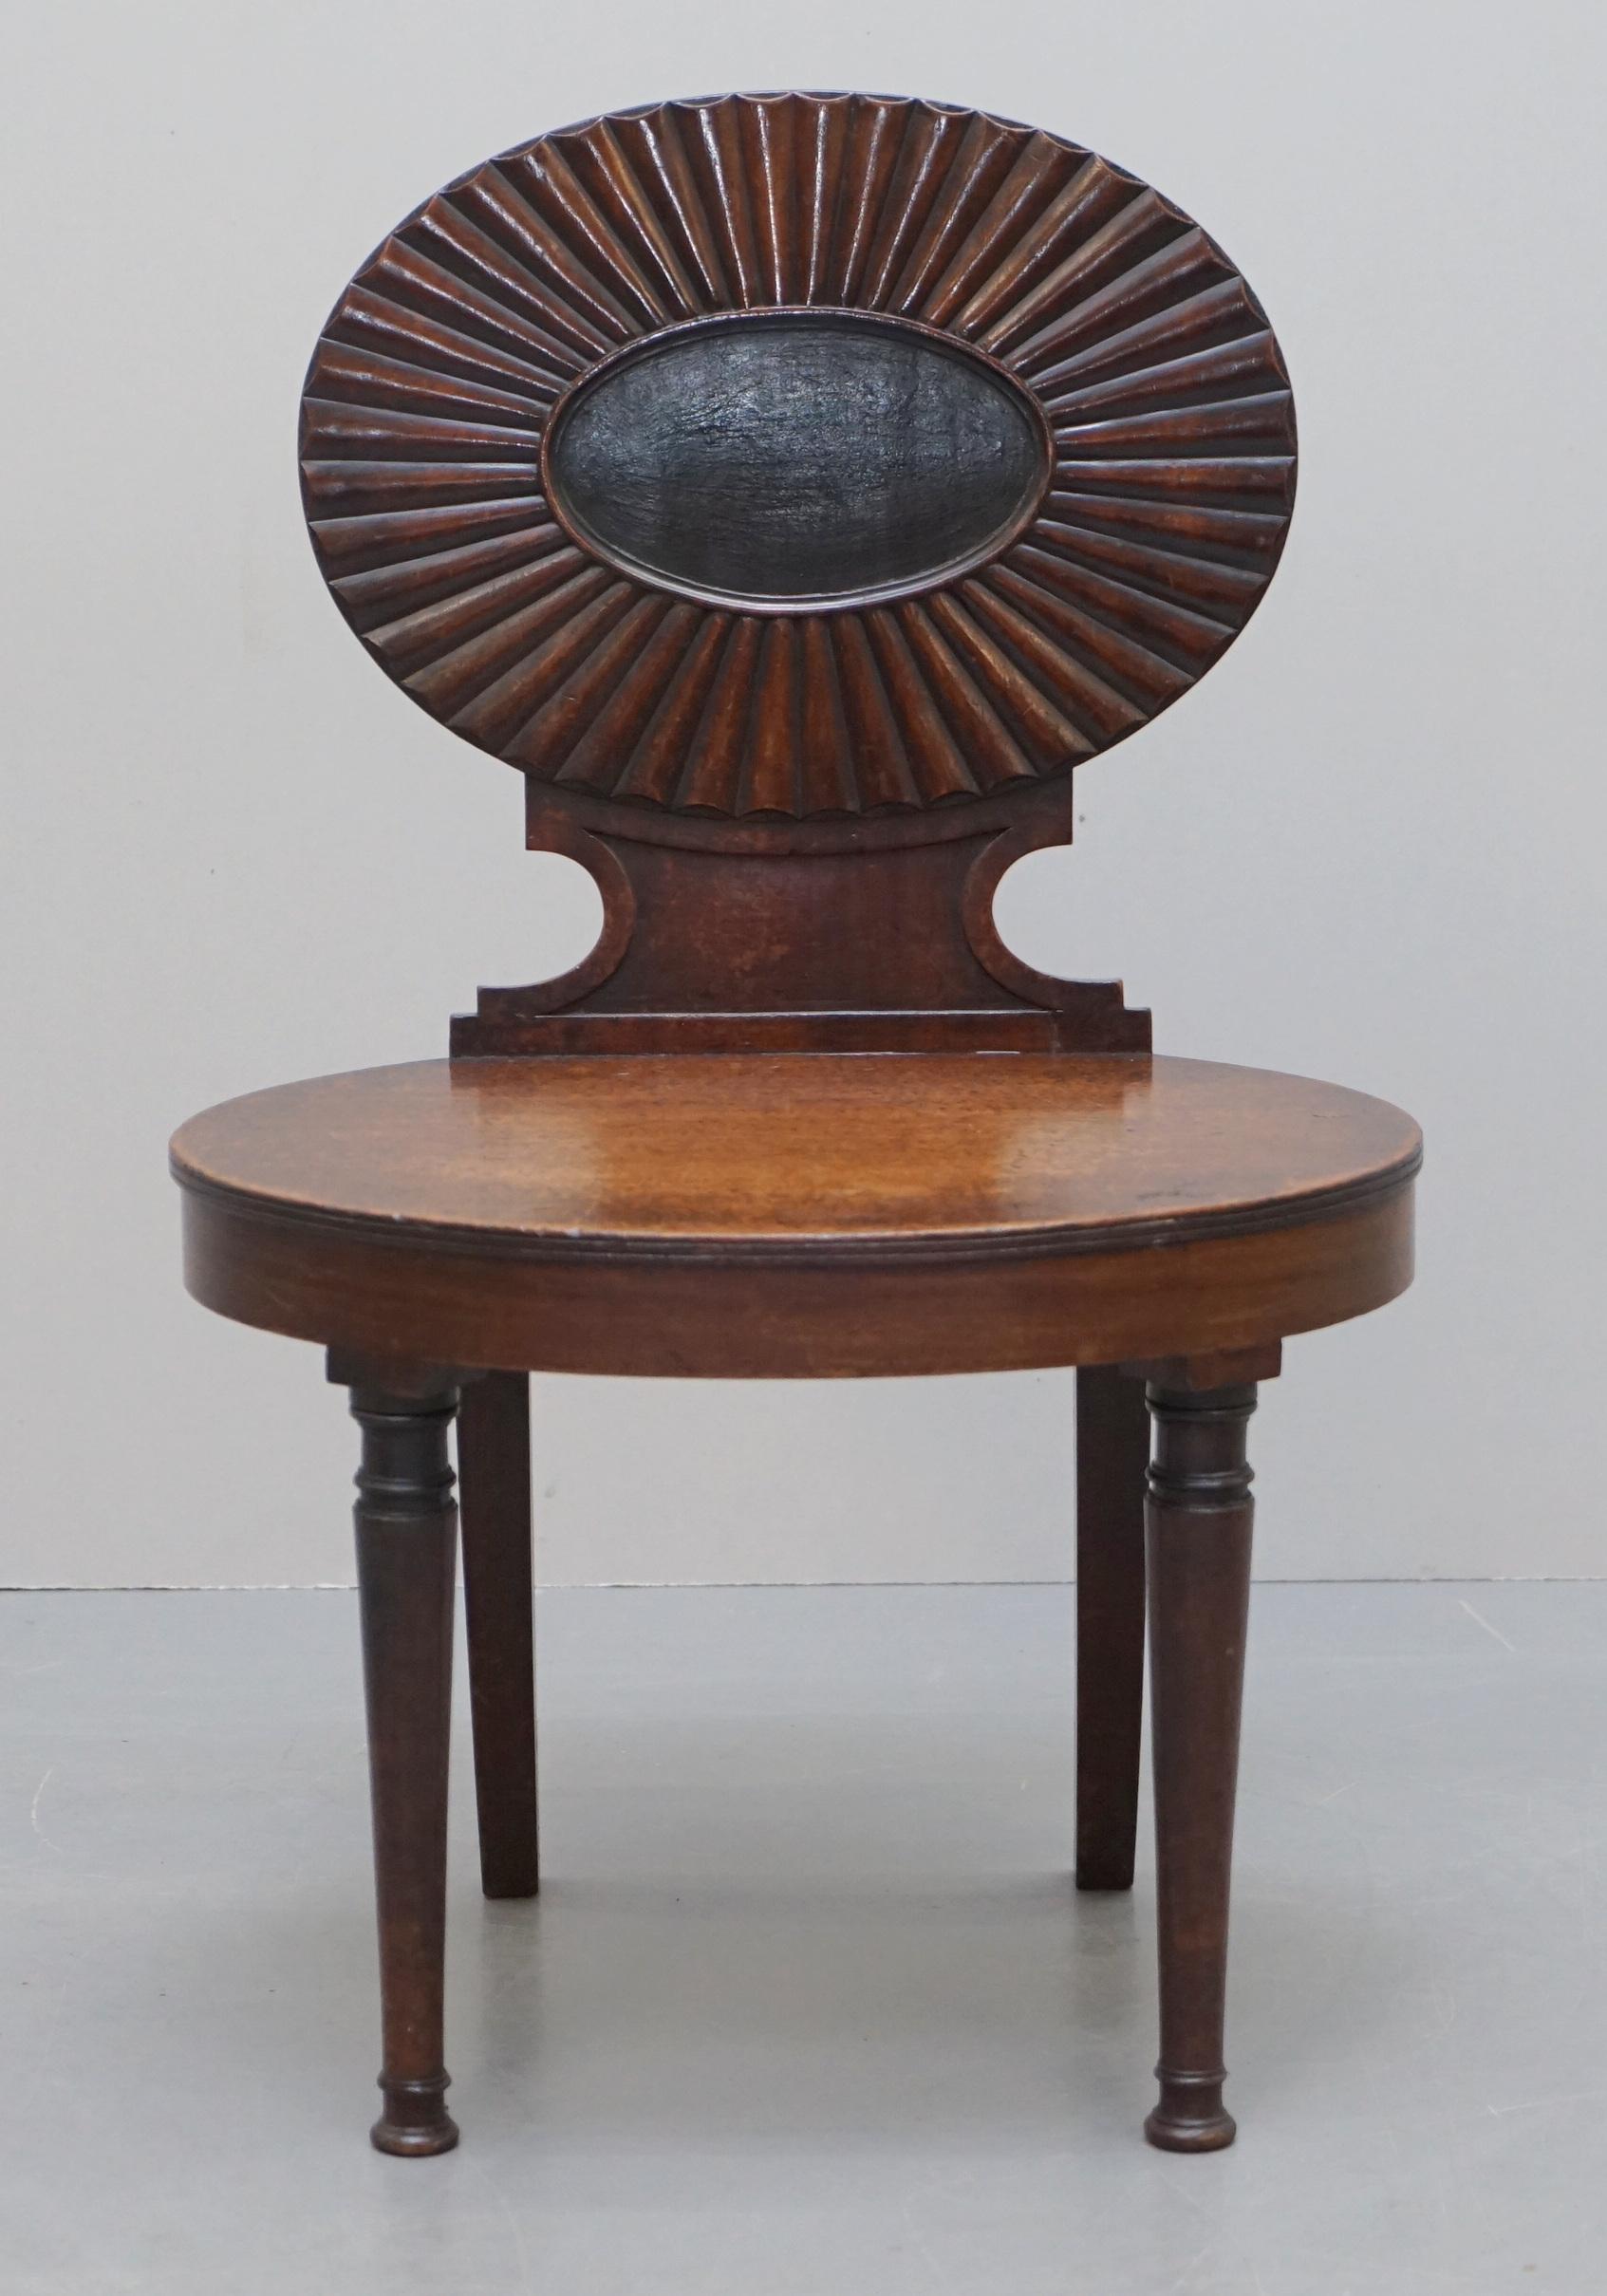 Wir freuen uns, diesen schönen georgianischen ca. 1780 kubanischen Mahagoni-Dielenstuhl, der Gillows of Lancaster zugeschrieben wird, zum Verkauf anzubieten

Ein sehr feiner georgianischer Stuhl, der eindeutig von Gillows hergestellt wurde, aber